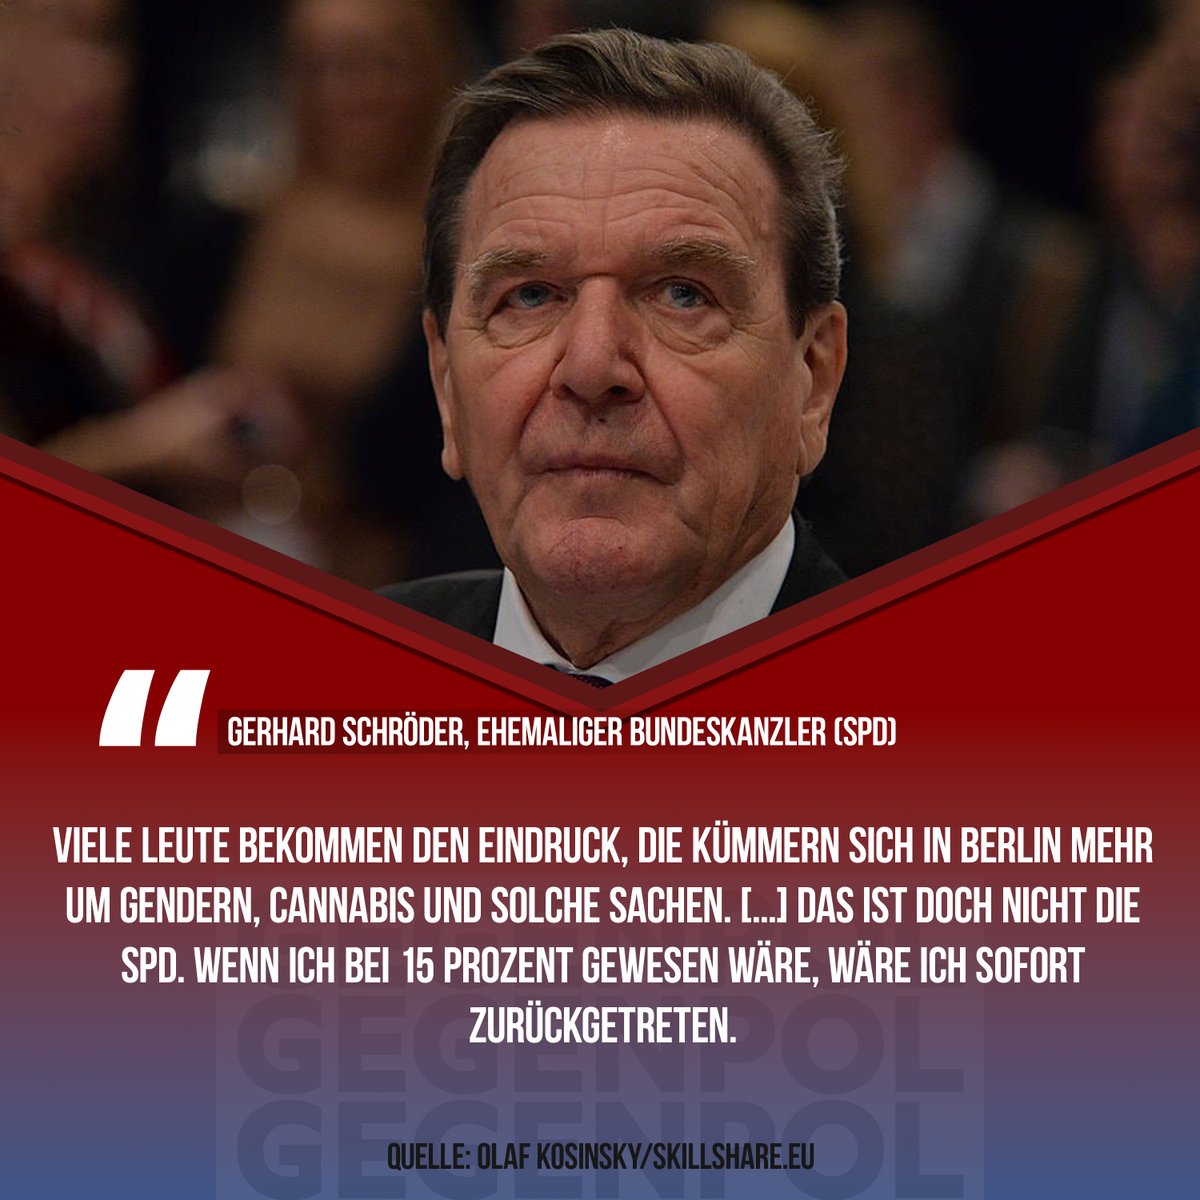 #Schröder #GerhardSchröder #Deutschland #Scholz #OlafScholz #SPD #Cannabis #Gender #Rücktritt